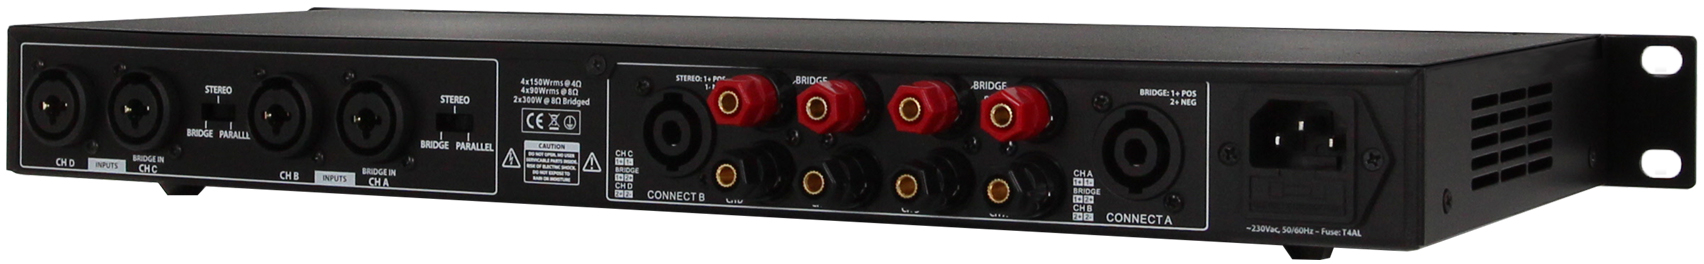 Definitive Audio Quad 1u 150d - Multiple channels power amplifier - Variation 2